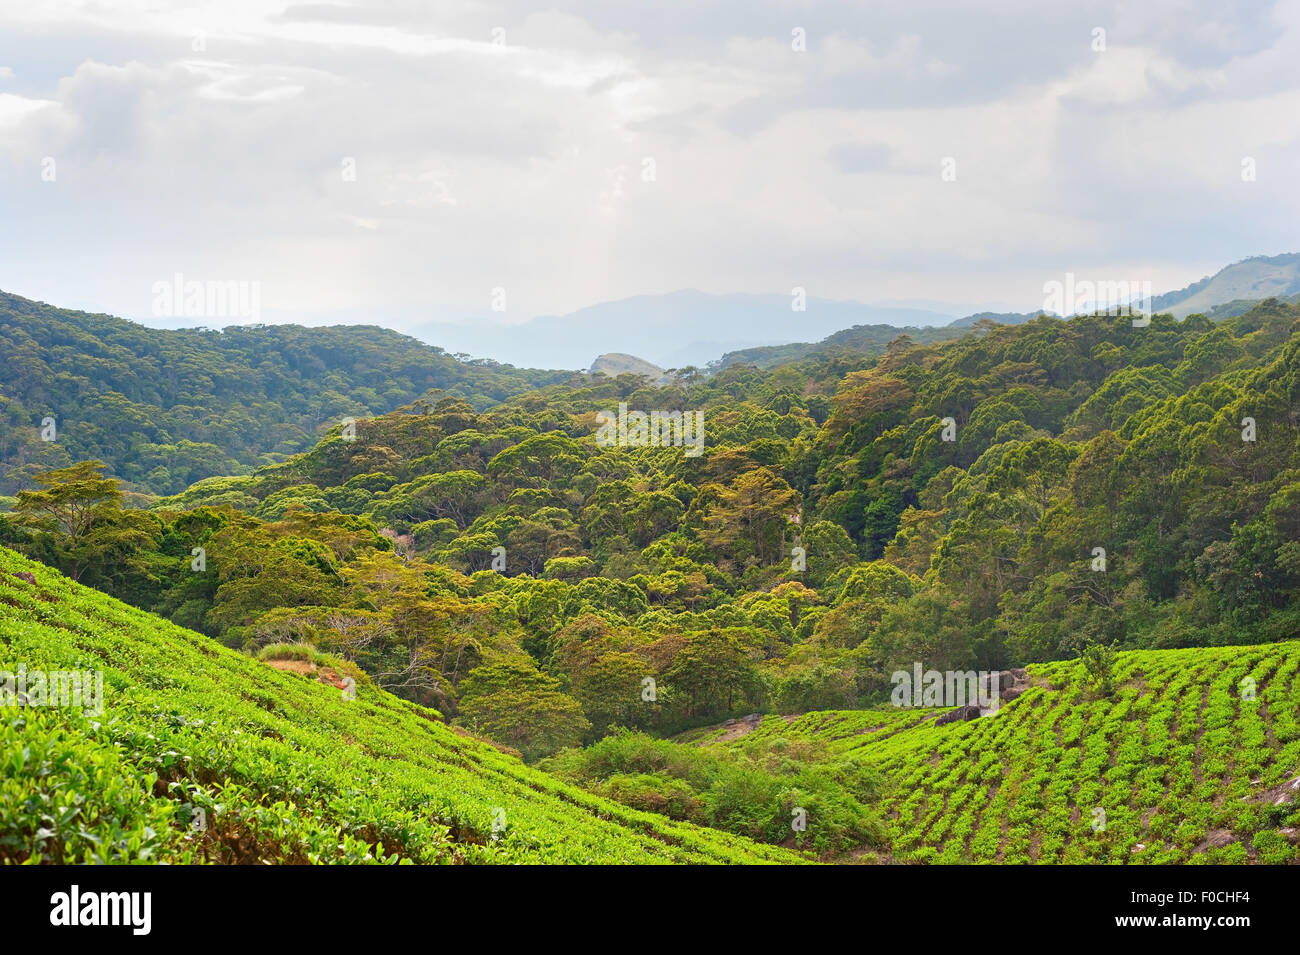 Tea fields in the mountains area. Rain forest, Sri Lanka Stock Photo